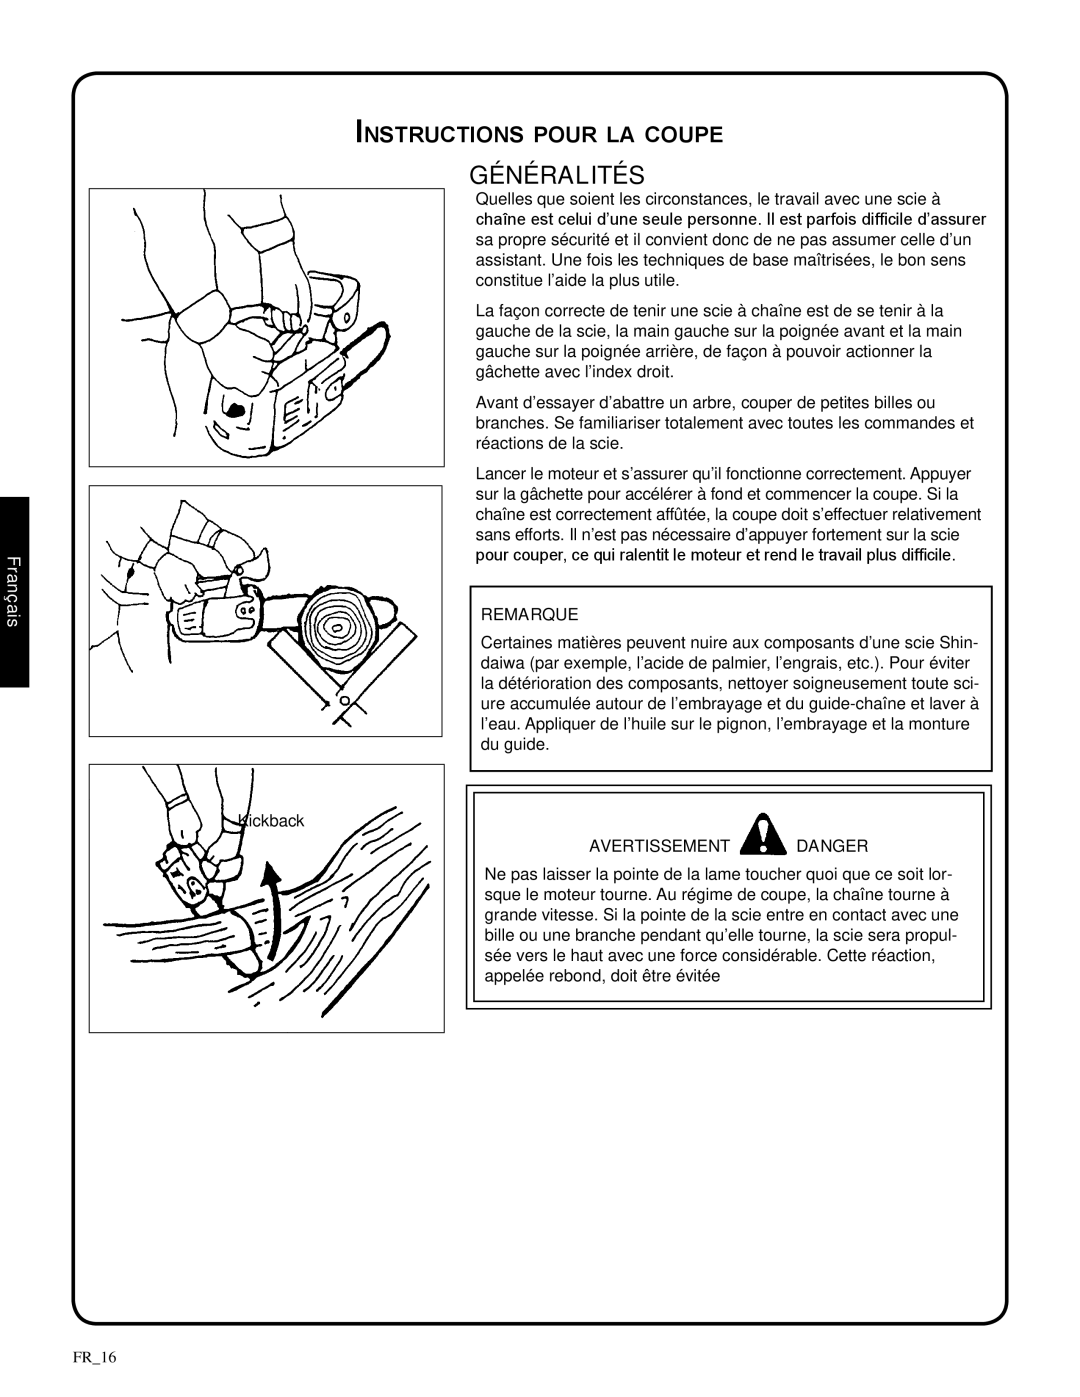 Shindaiwa 82085, 326T manual Généralités, Instructions pour la coupe, Français, Remarque, avertissement danger 